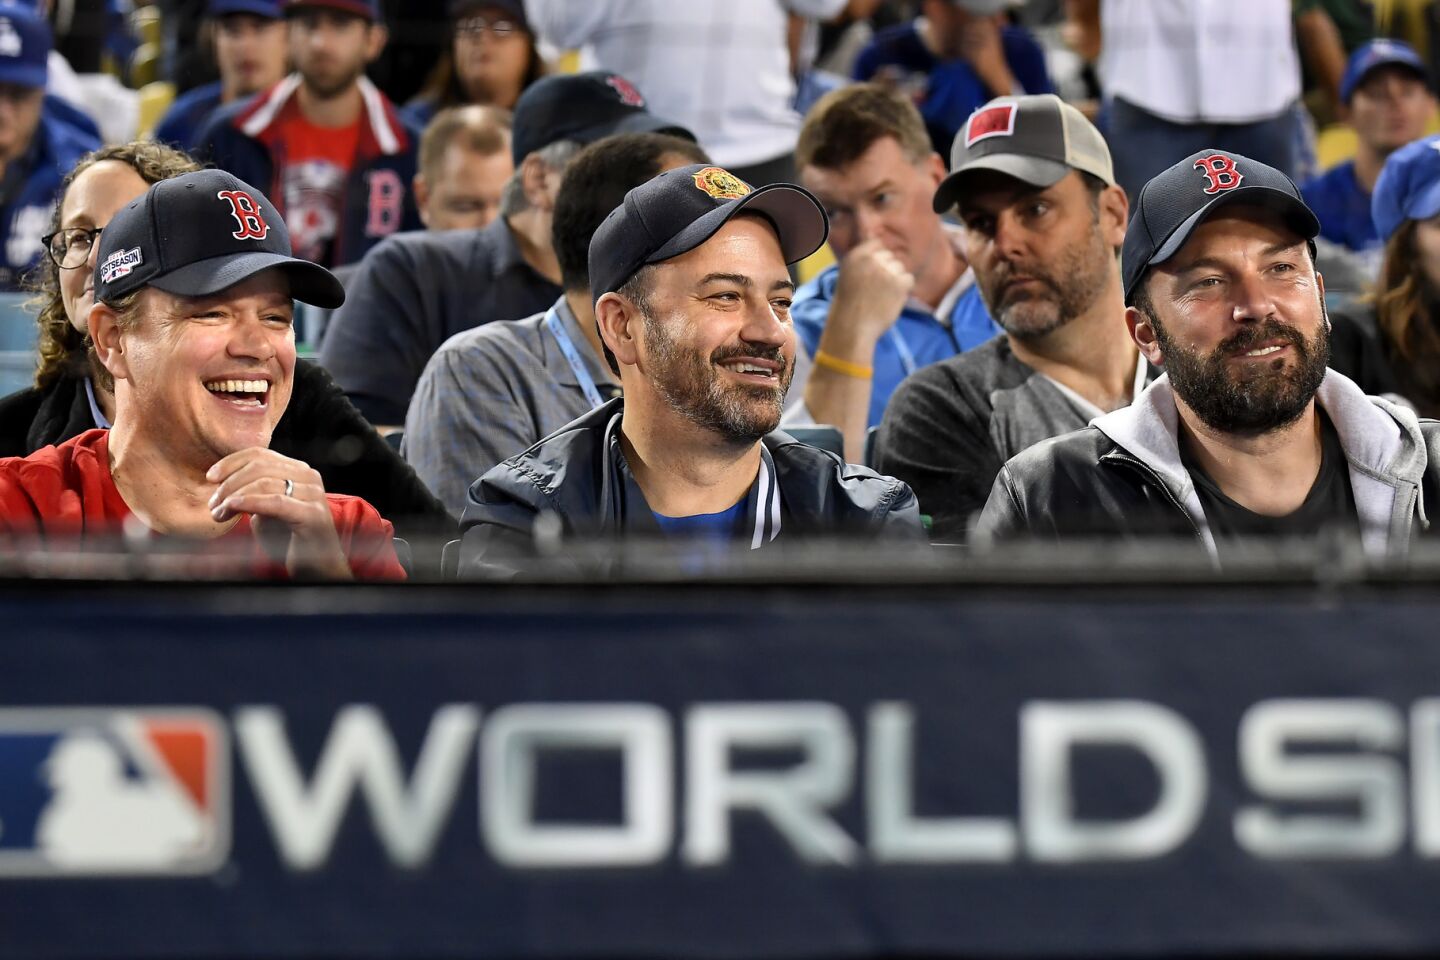 From left, Matt Damon, Jimmy Kimmel and Ben Affleck watch Game 5 at Dodger Stadium.